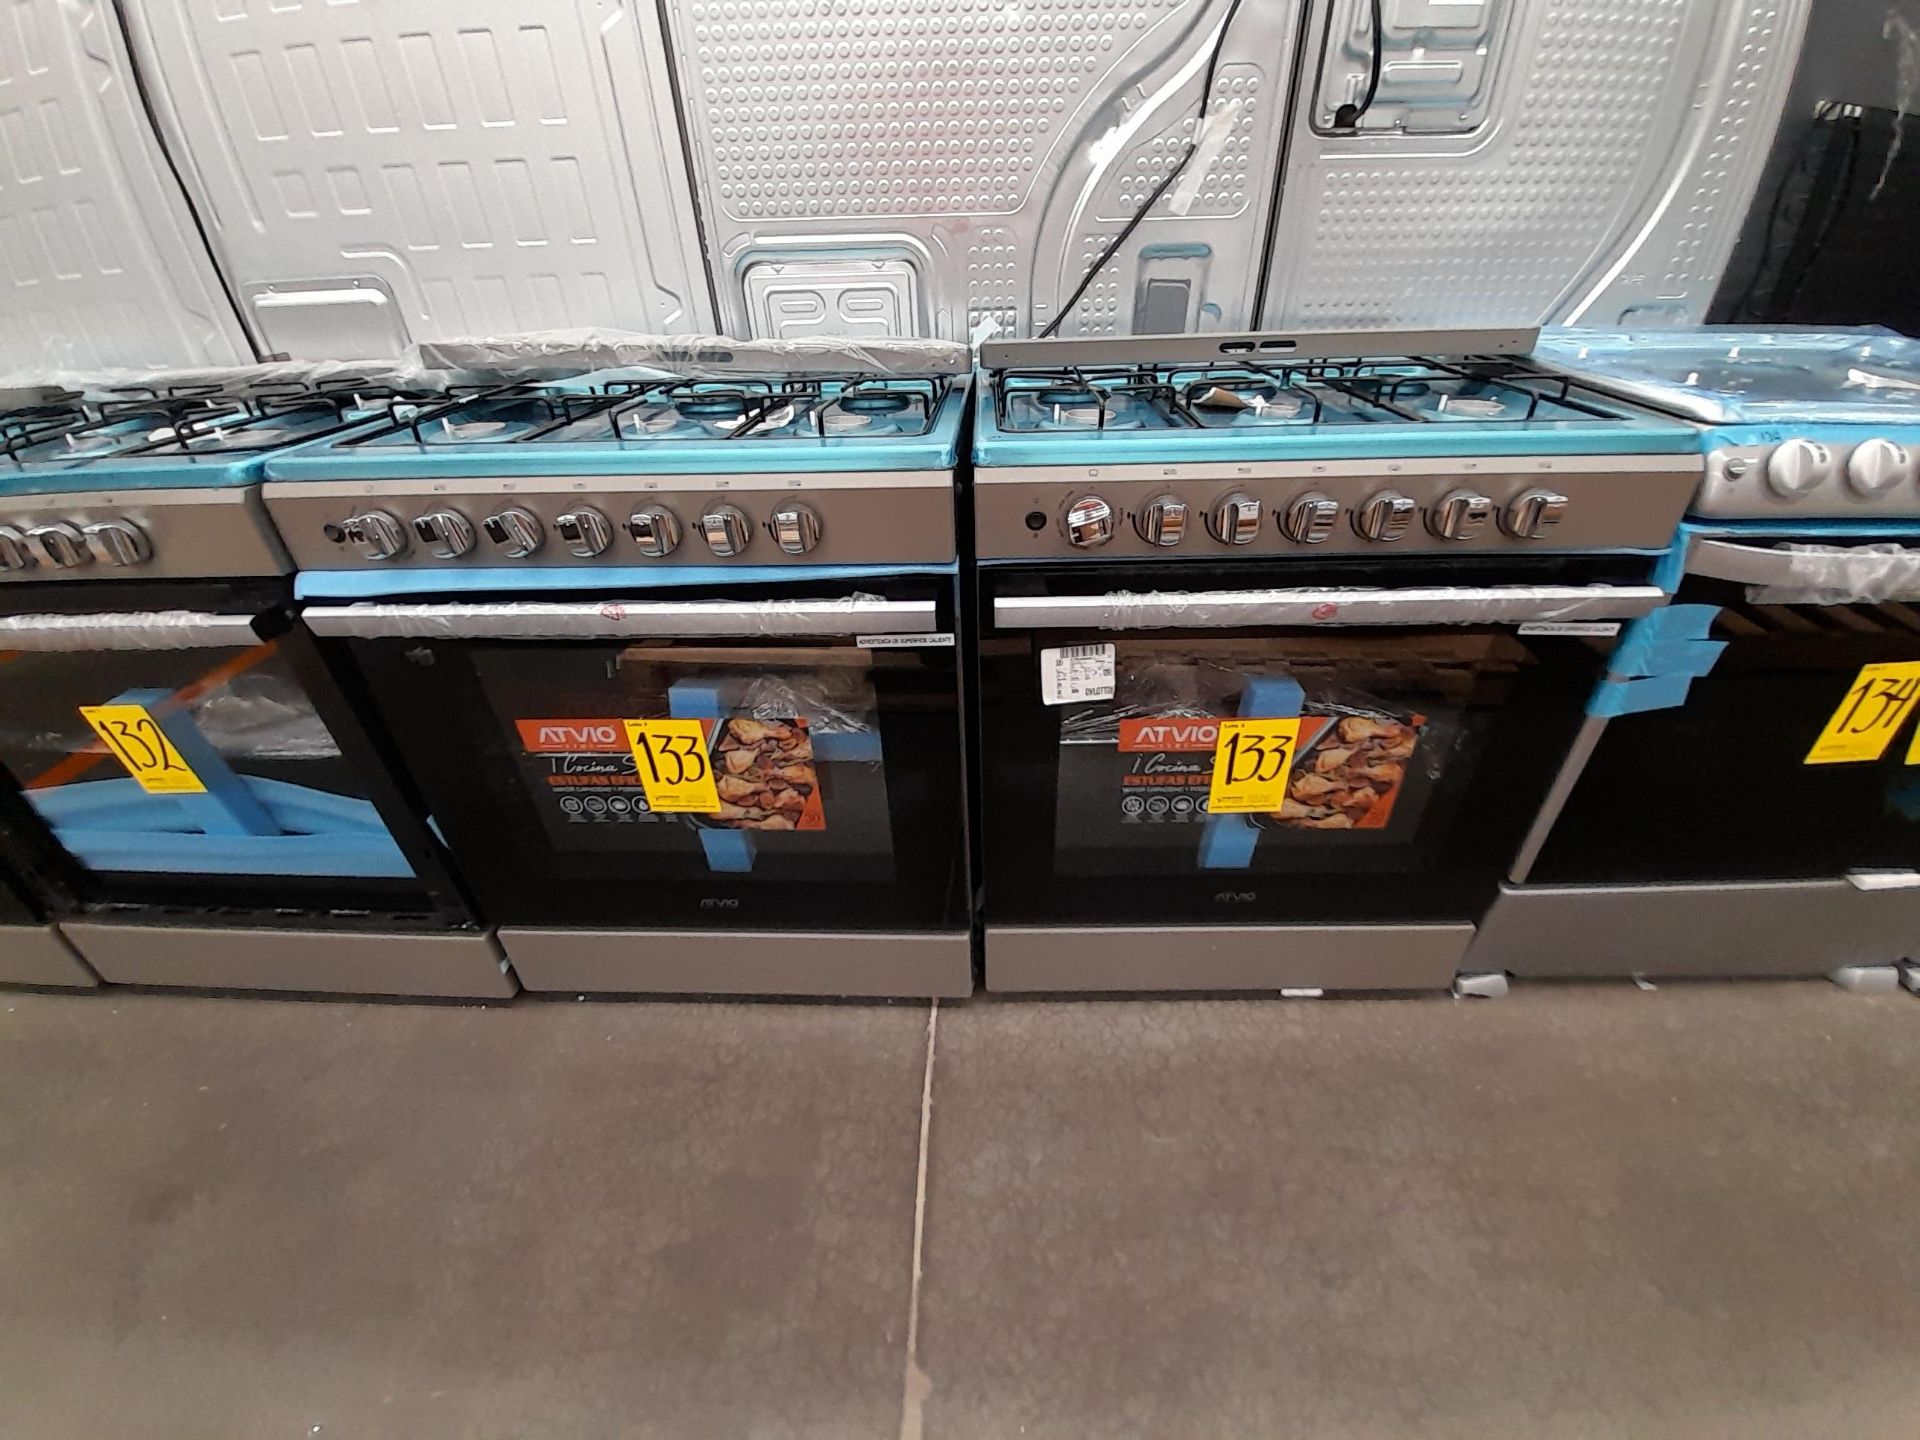 Lote de 2 estufas Contiene: 1 estufa con 6 quemadores Marca ATVIO, Modelo 6G066S, Serie ND, Color G